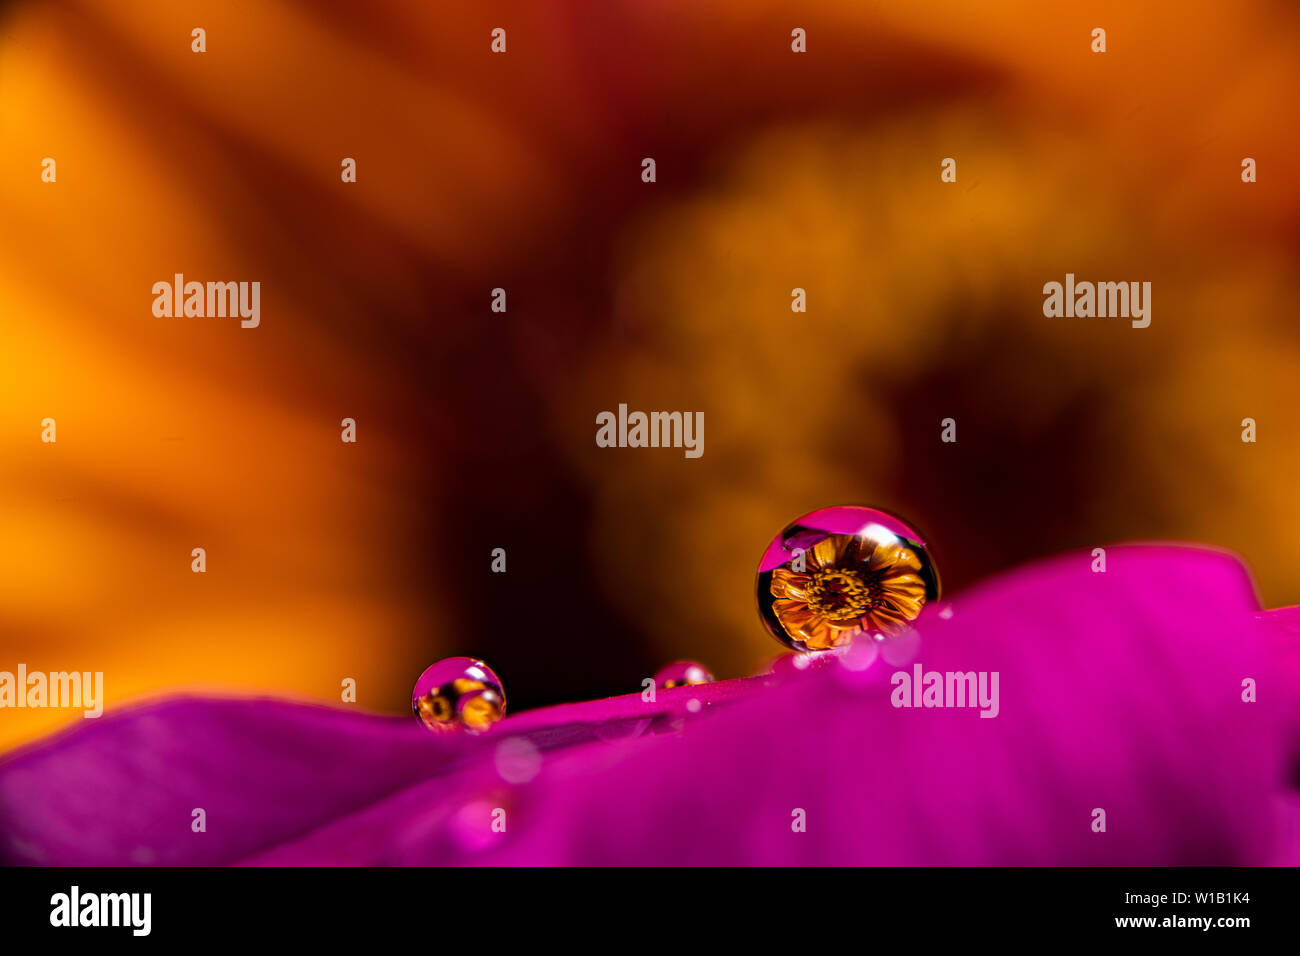 Gouttes d'eau sur une fleur magenta pourpre vinca réfracter une information à l'image sur un orange jaune zinnia fleur dans l'arrière-plan Banque D'Images